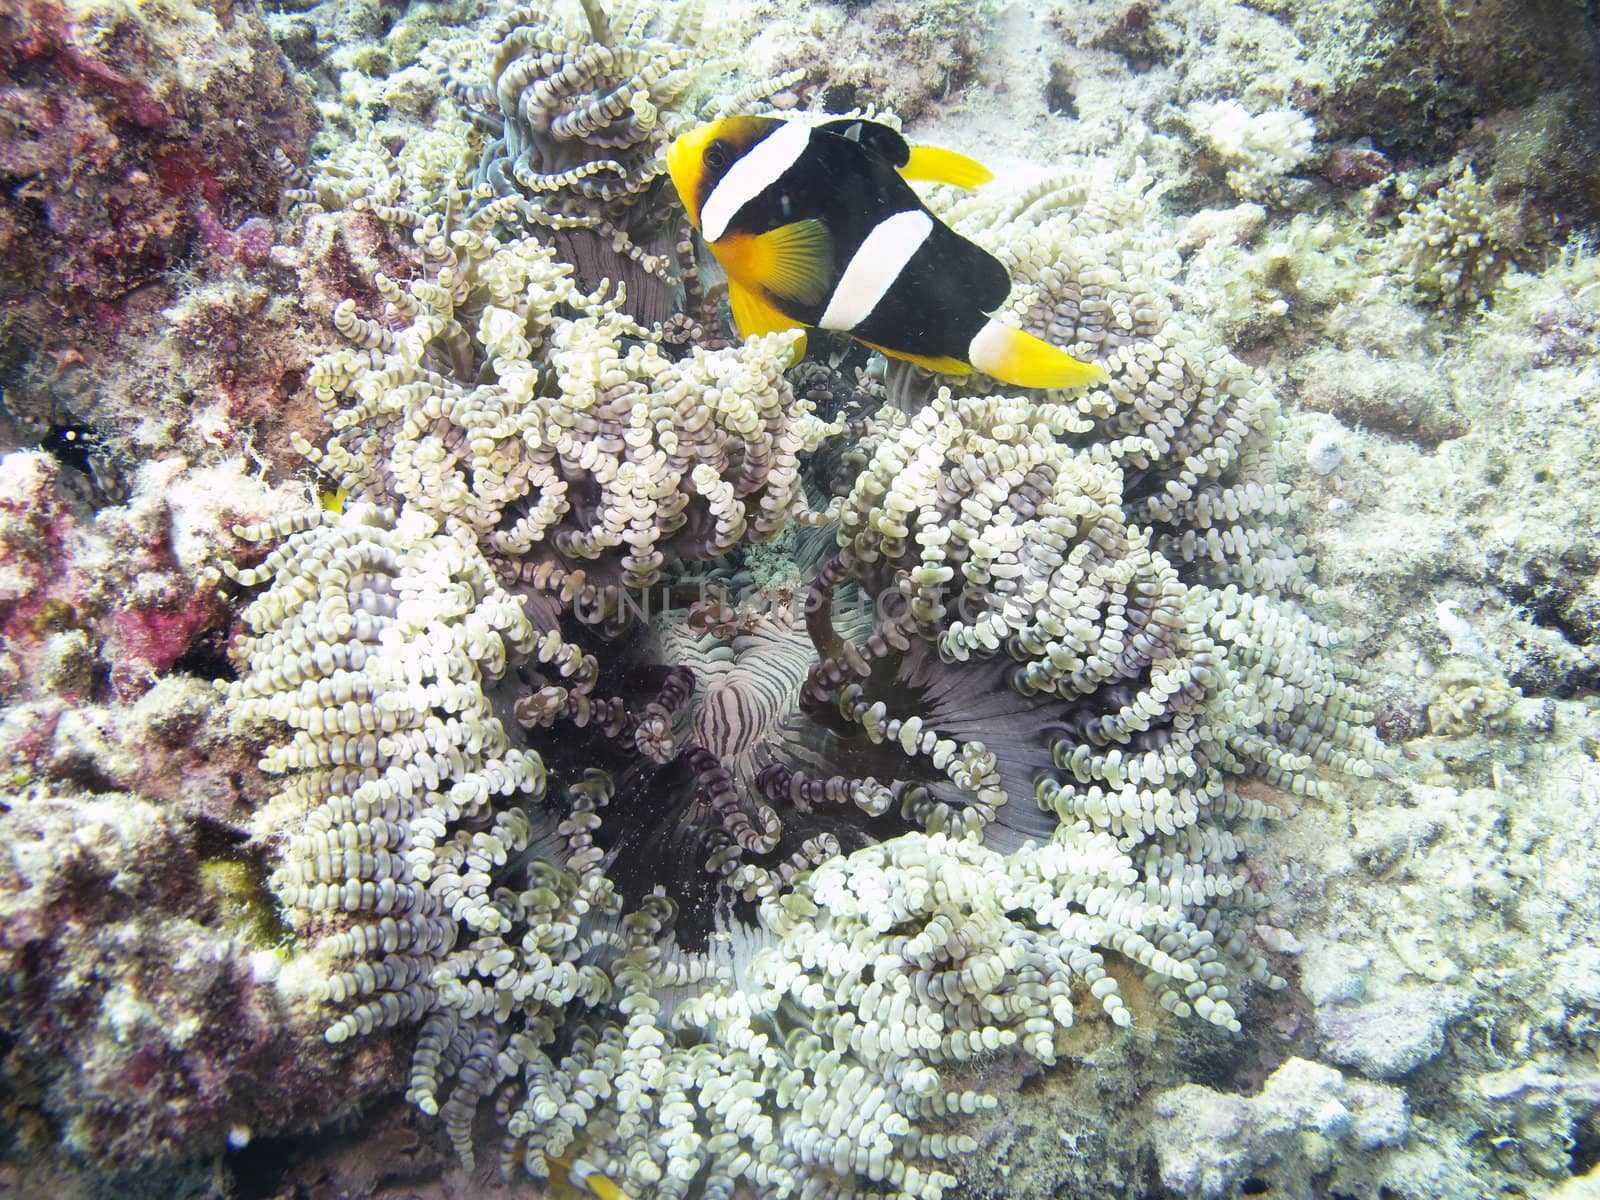 Clark's Anemonefish swimming around a coral reef







Clark's Anemonefish (Amphiprion clarkii)